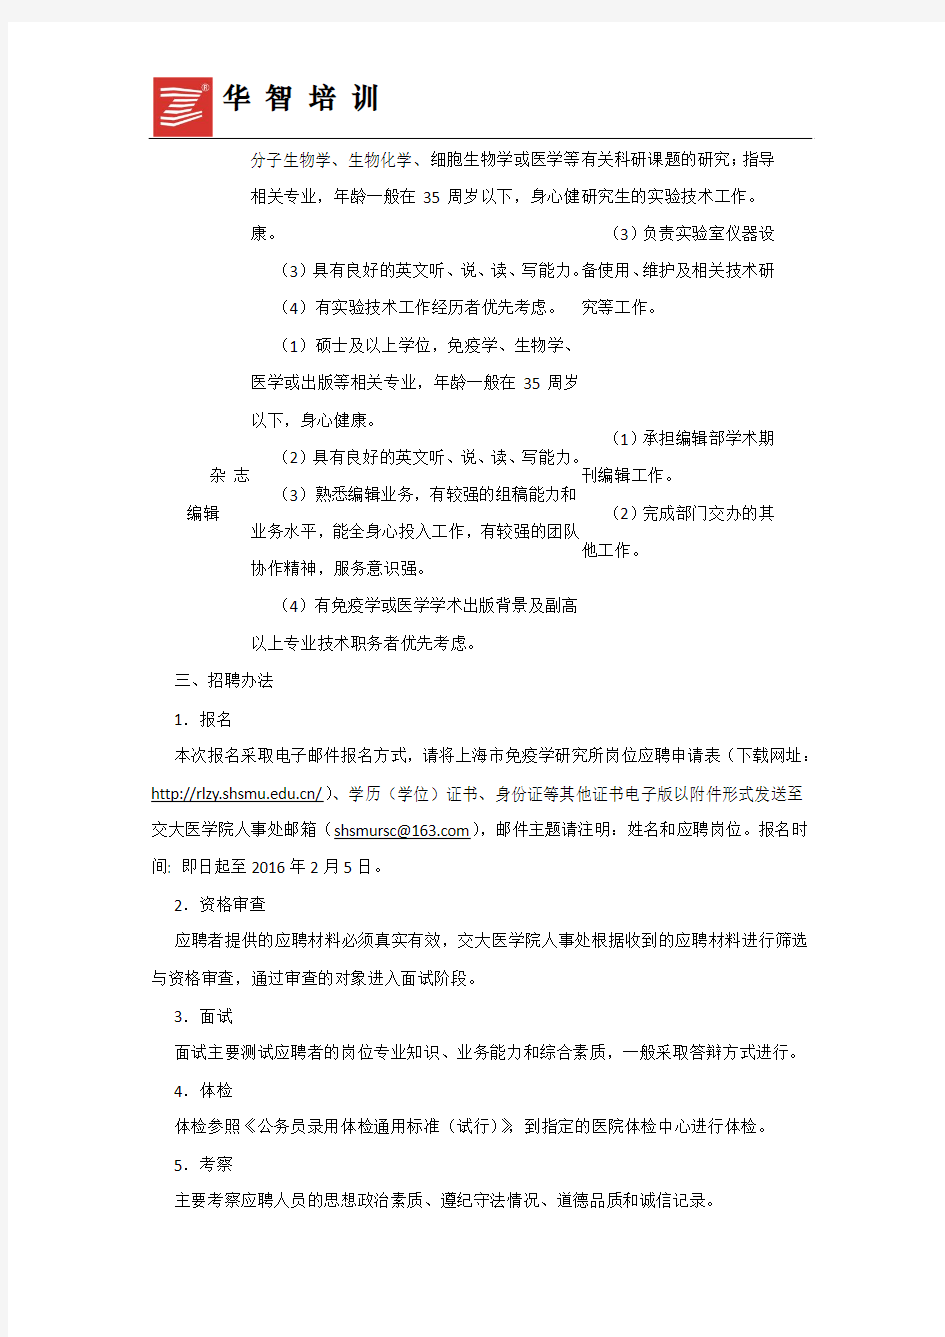 2016上海免疫学研究所工作人员公开招聘公告